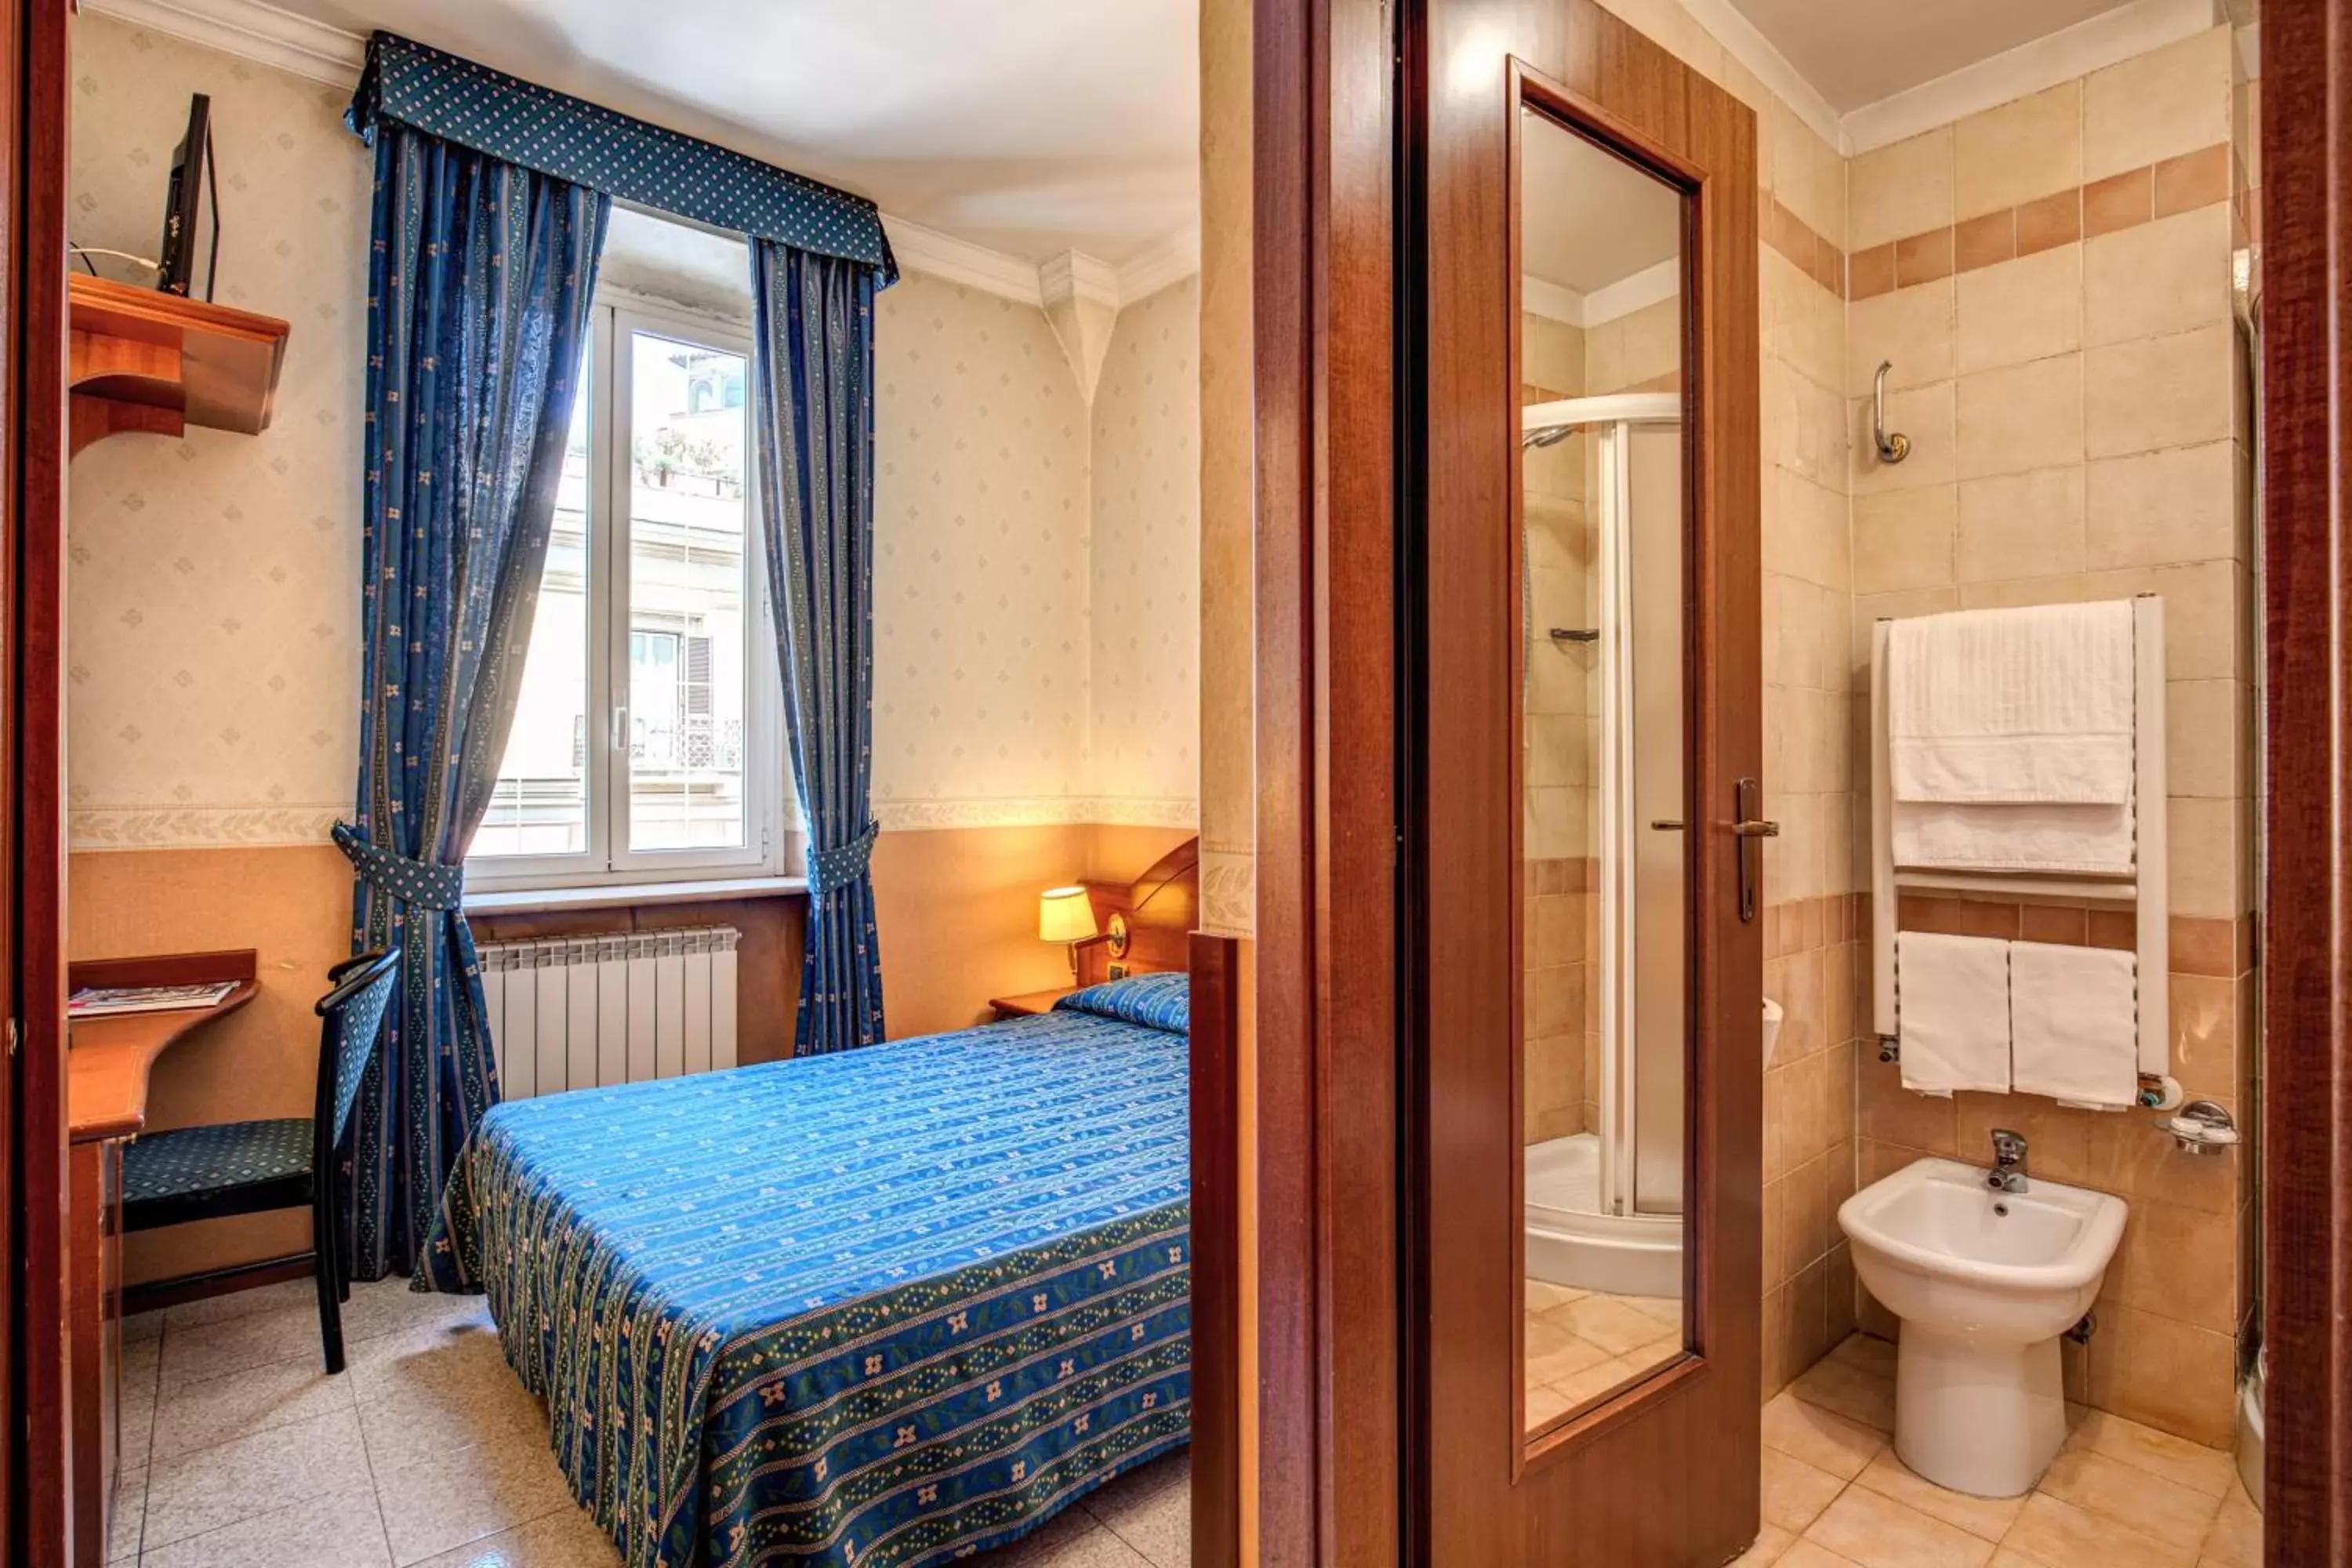 Bed, Bathroom in Hotel Verona Rome